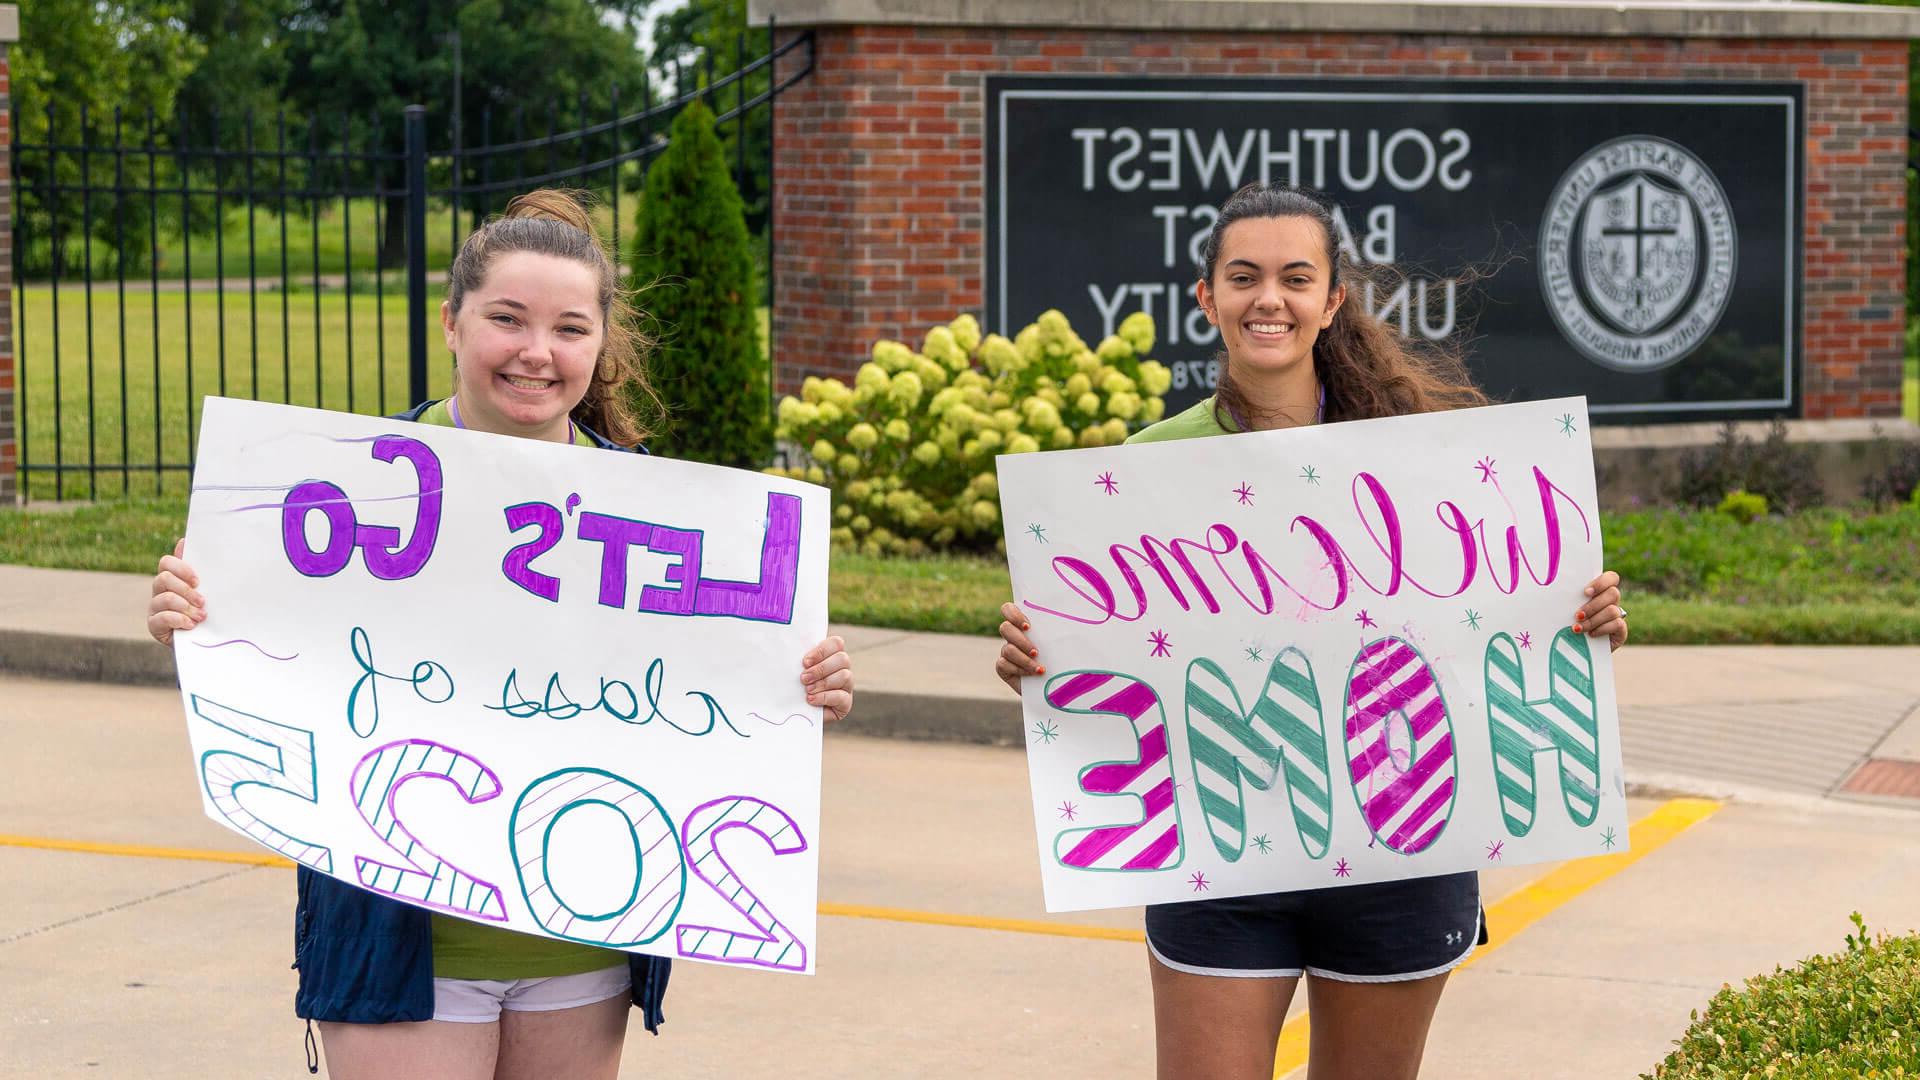 学生们举着写着“欢迎回家”的牌子站在S-B-U正门前